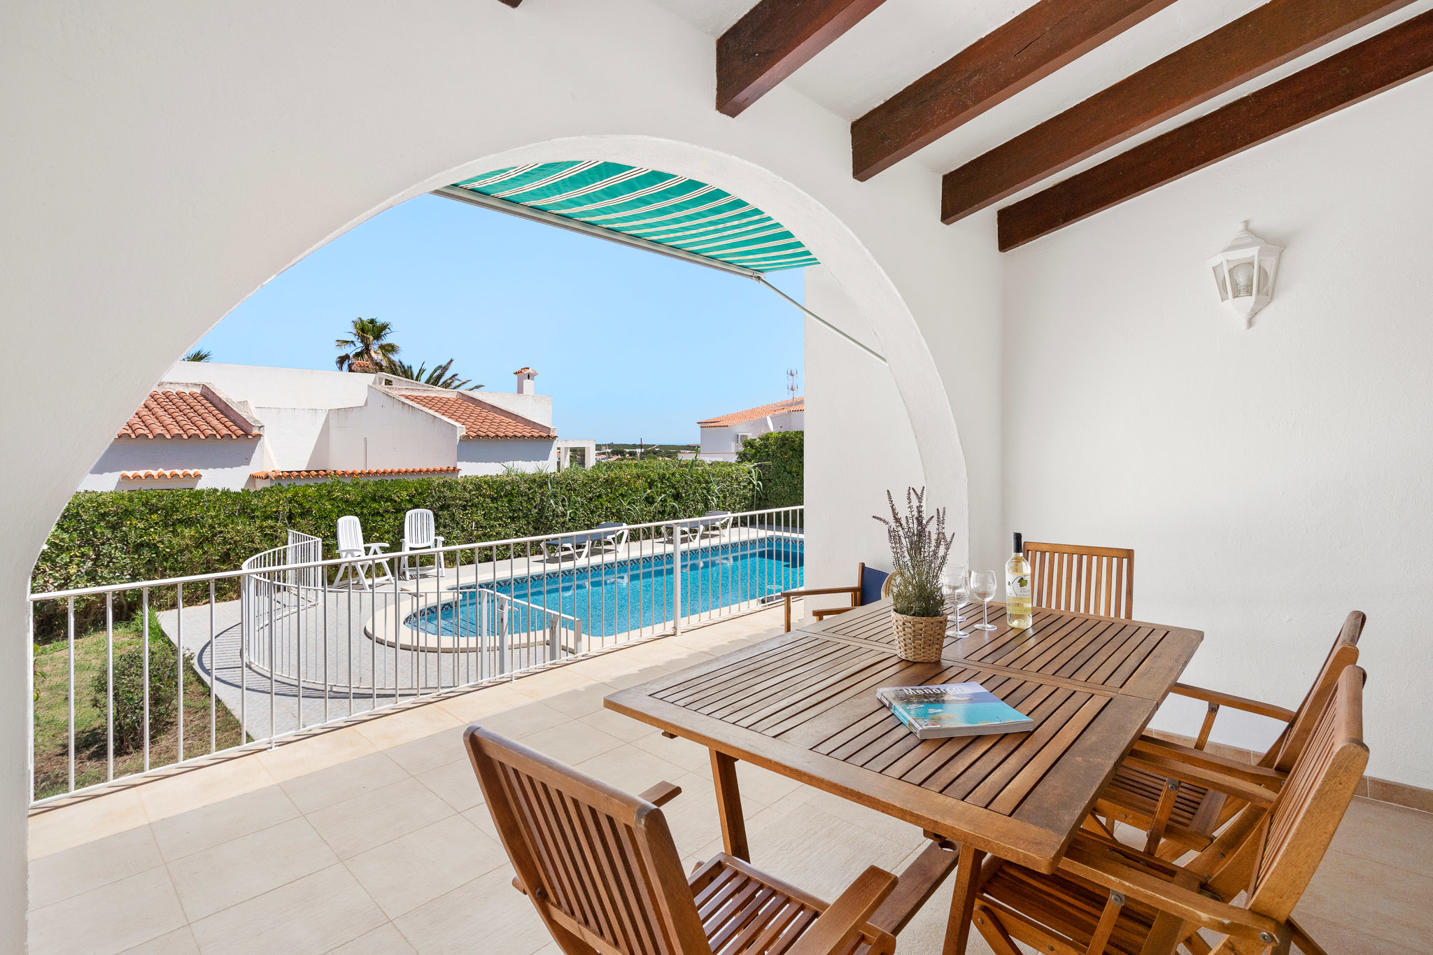 Villa Sa Lluna - Porche exterior y vistas a la piscina- Villa Sa Lluna - Chalet con piscina - Arenal den Castell - Menorca